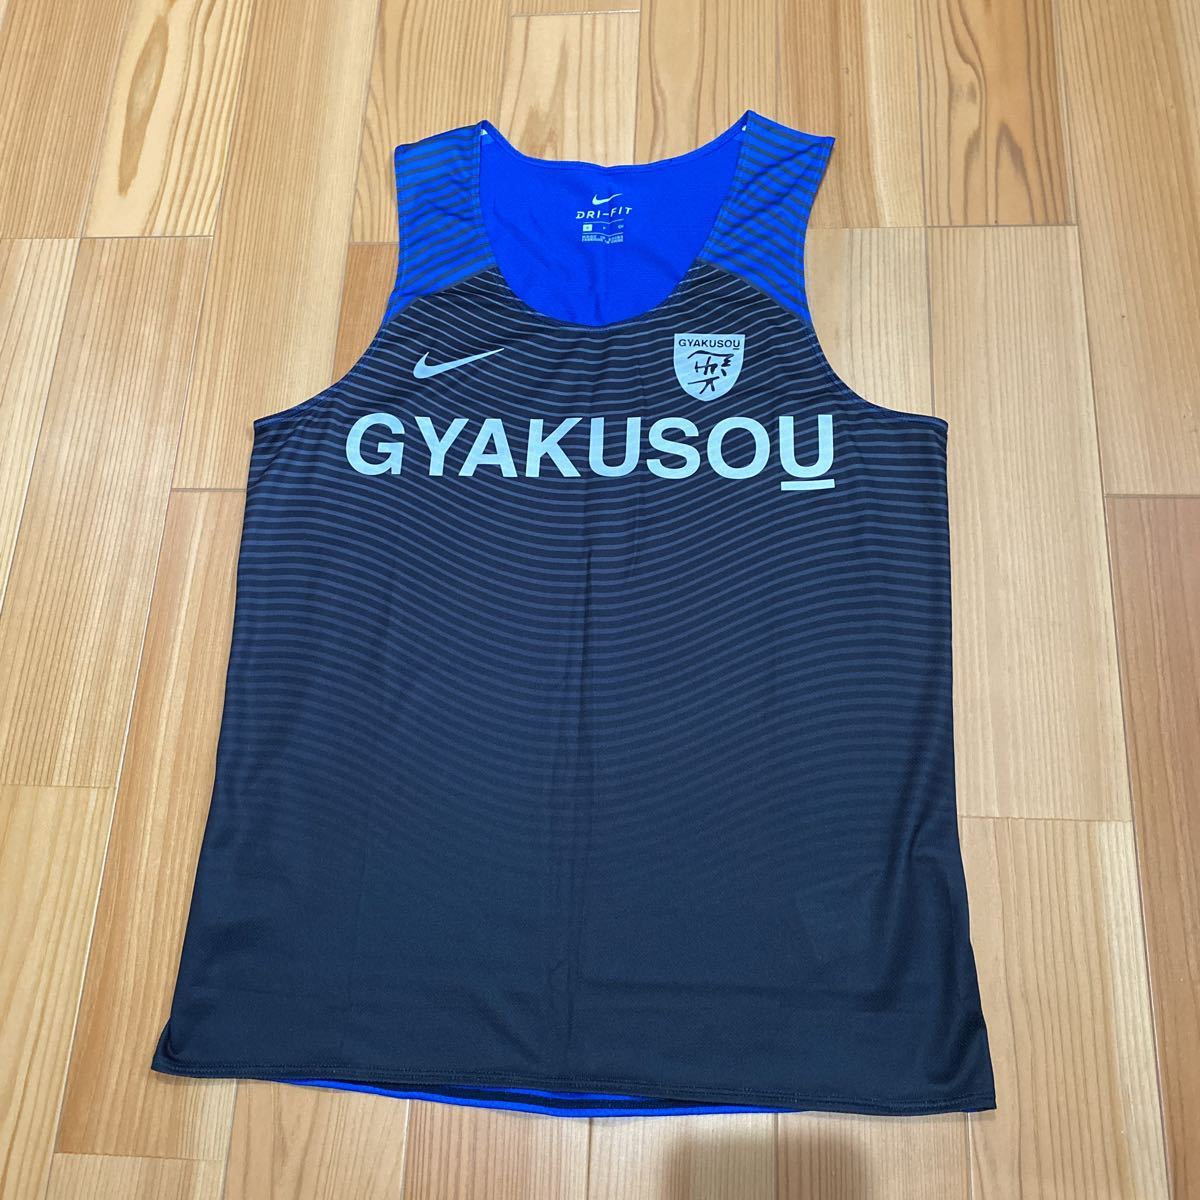 新品! gyakusou ディスタンスシングレット Men's S/ NIKE undercover コラボ 別注 マラソン ランニングウェア タンクトップ Tシャツ